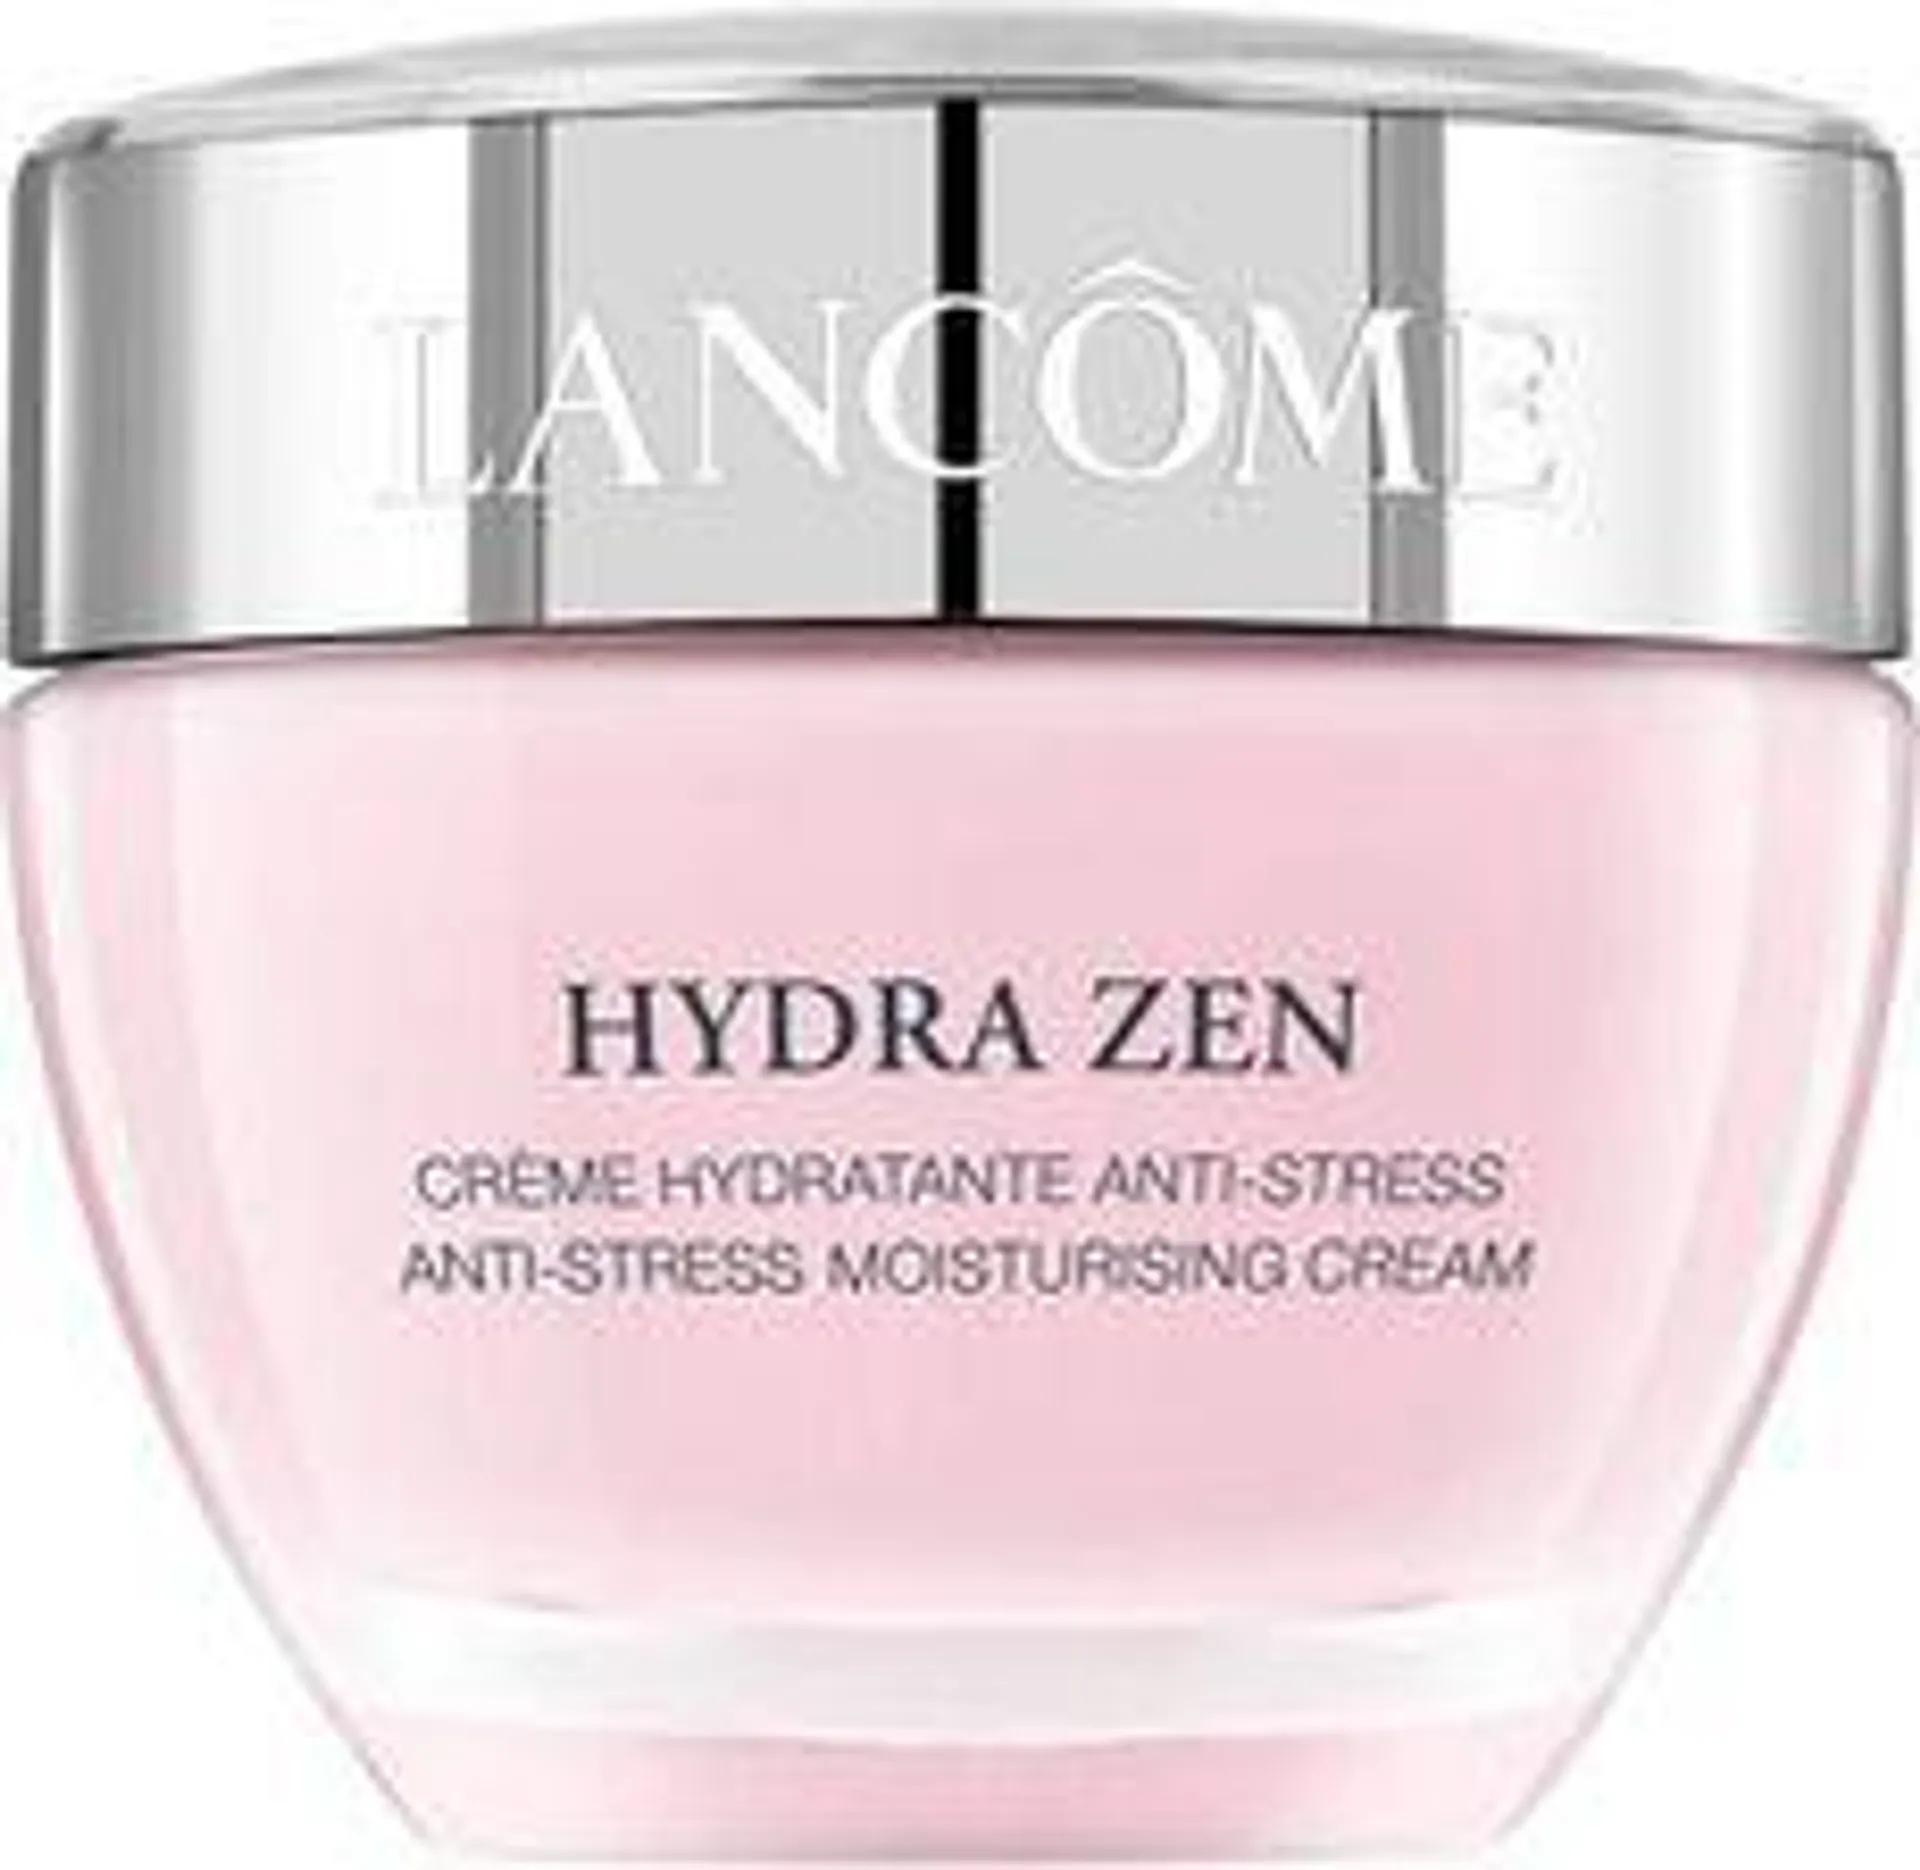 Lancome Hydra Zen Anti-Stress Moisturising Cream Nawilżający krem do każdego rodzaju skóry 50ml